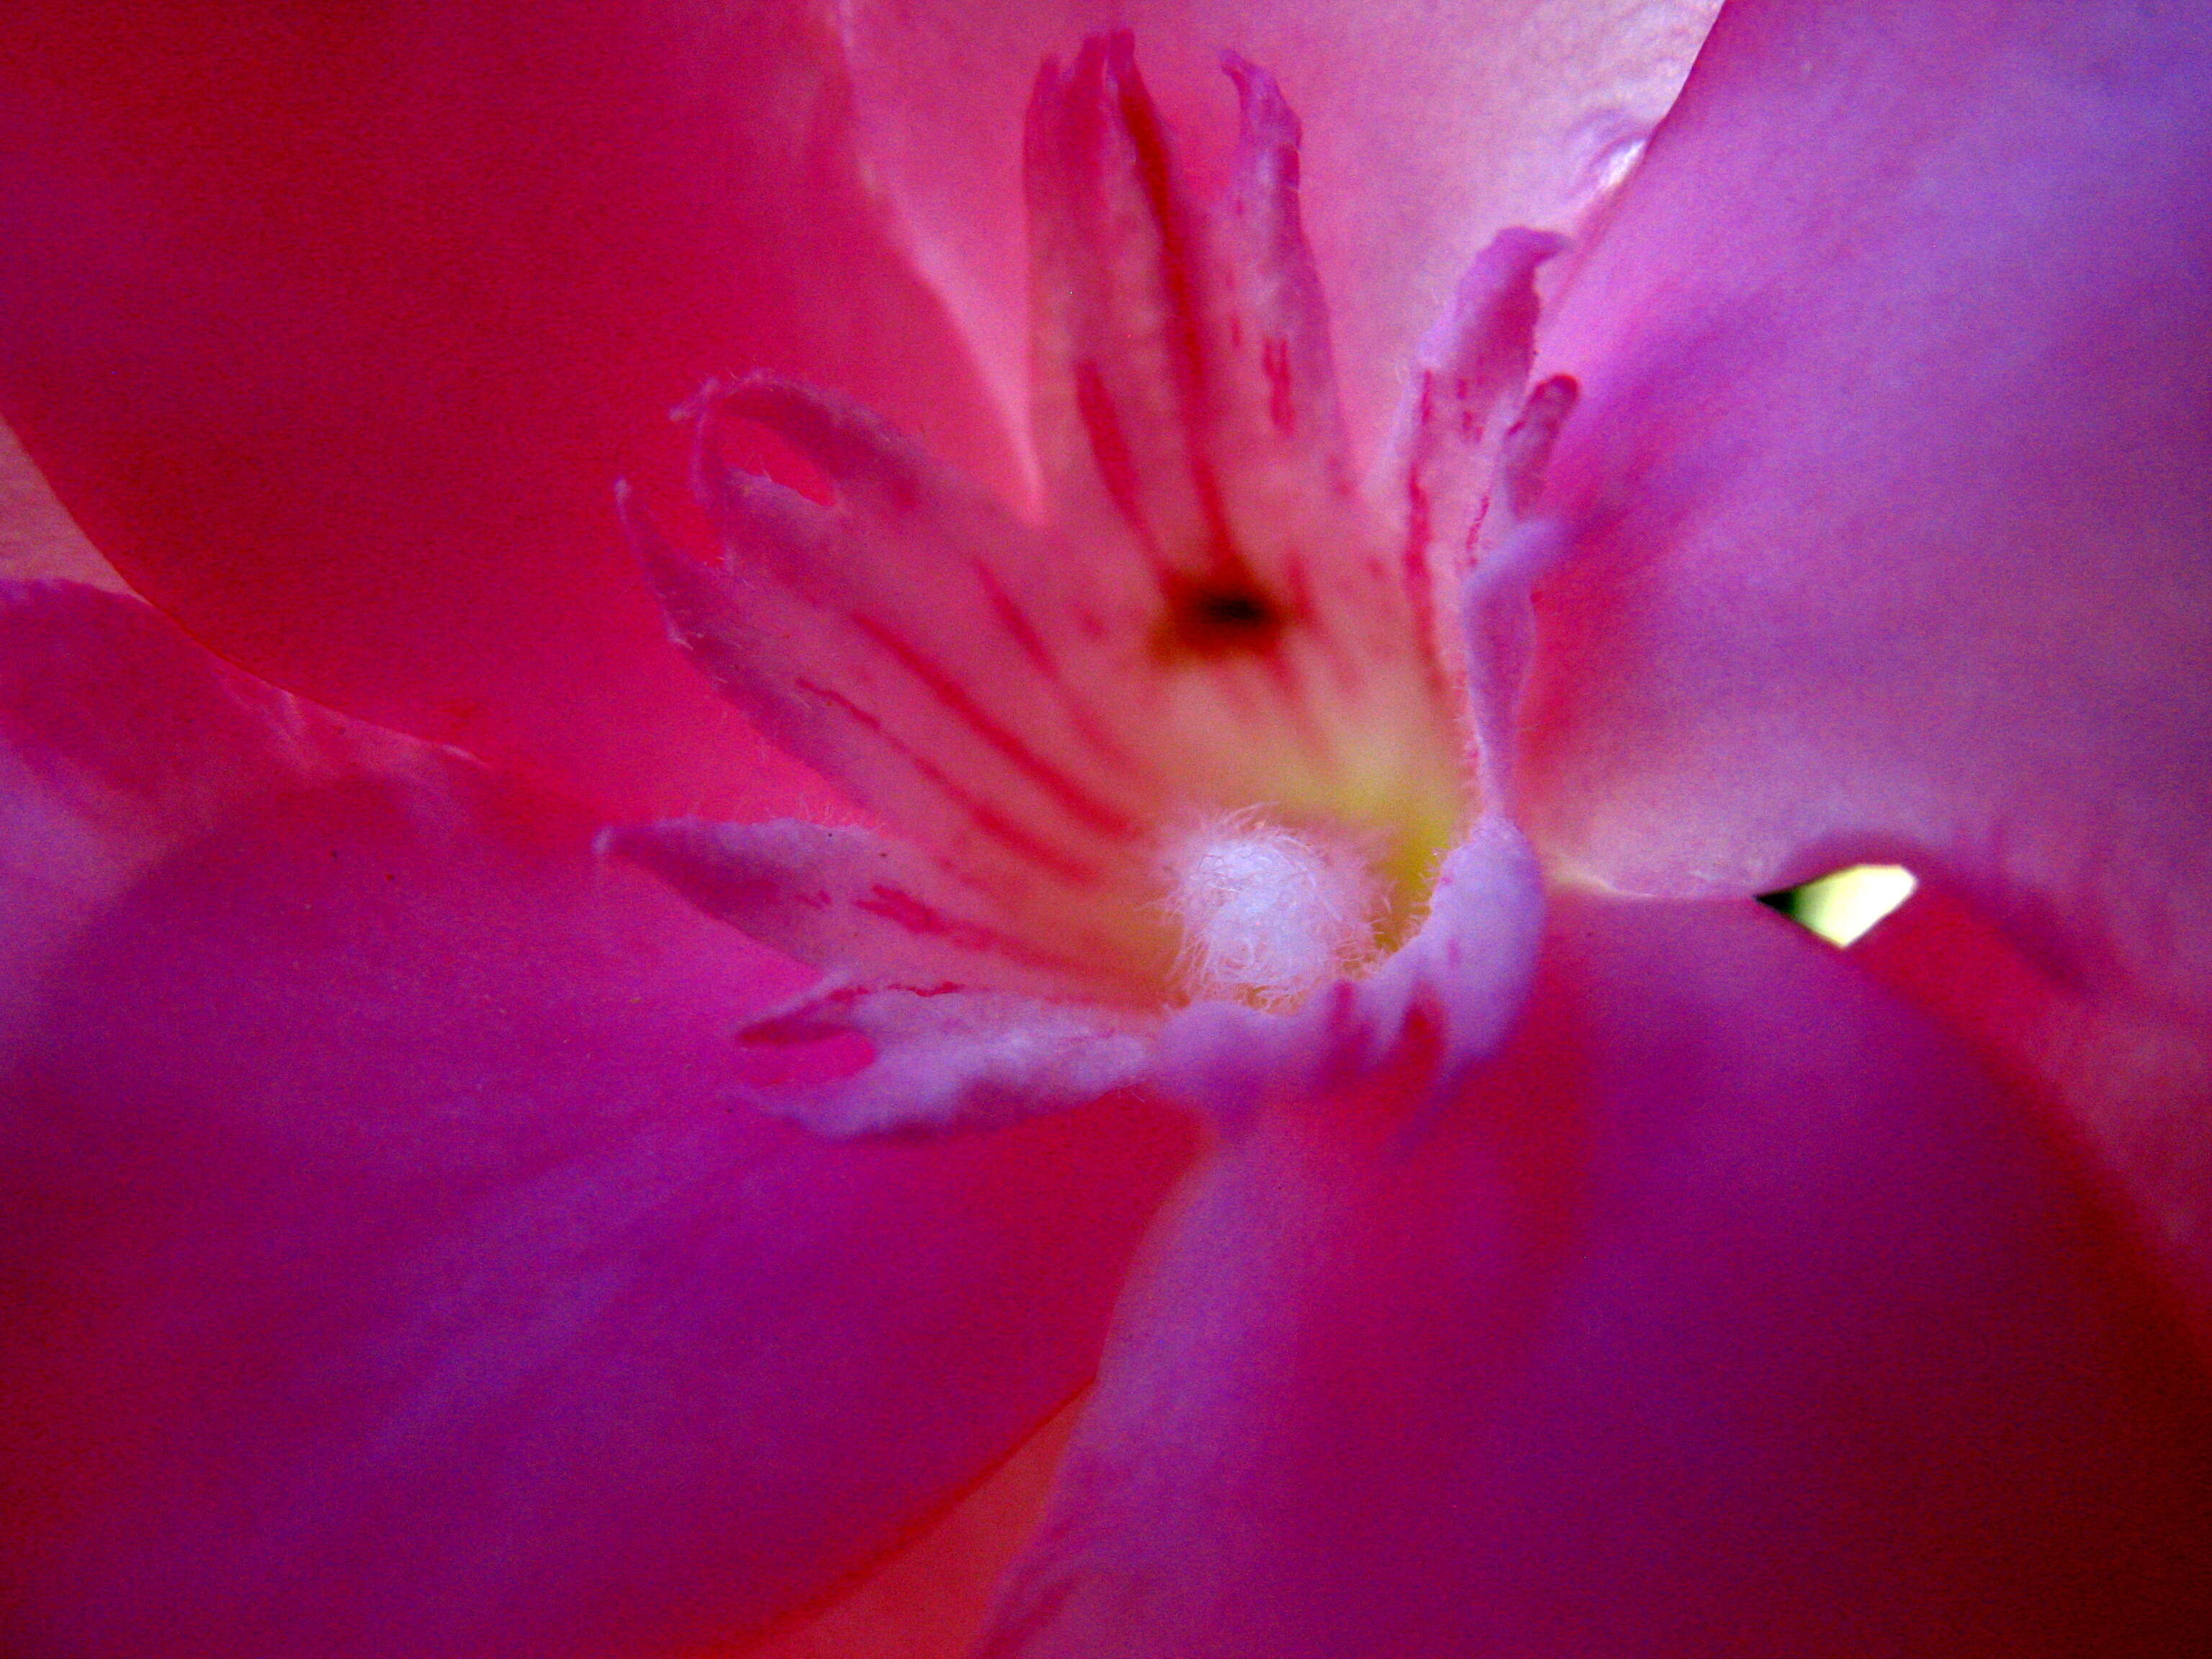 Image of oleander